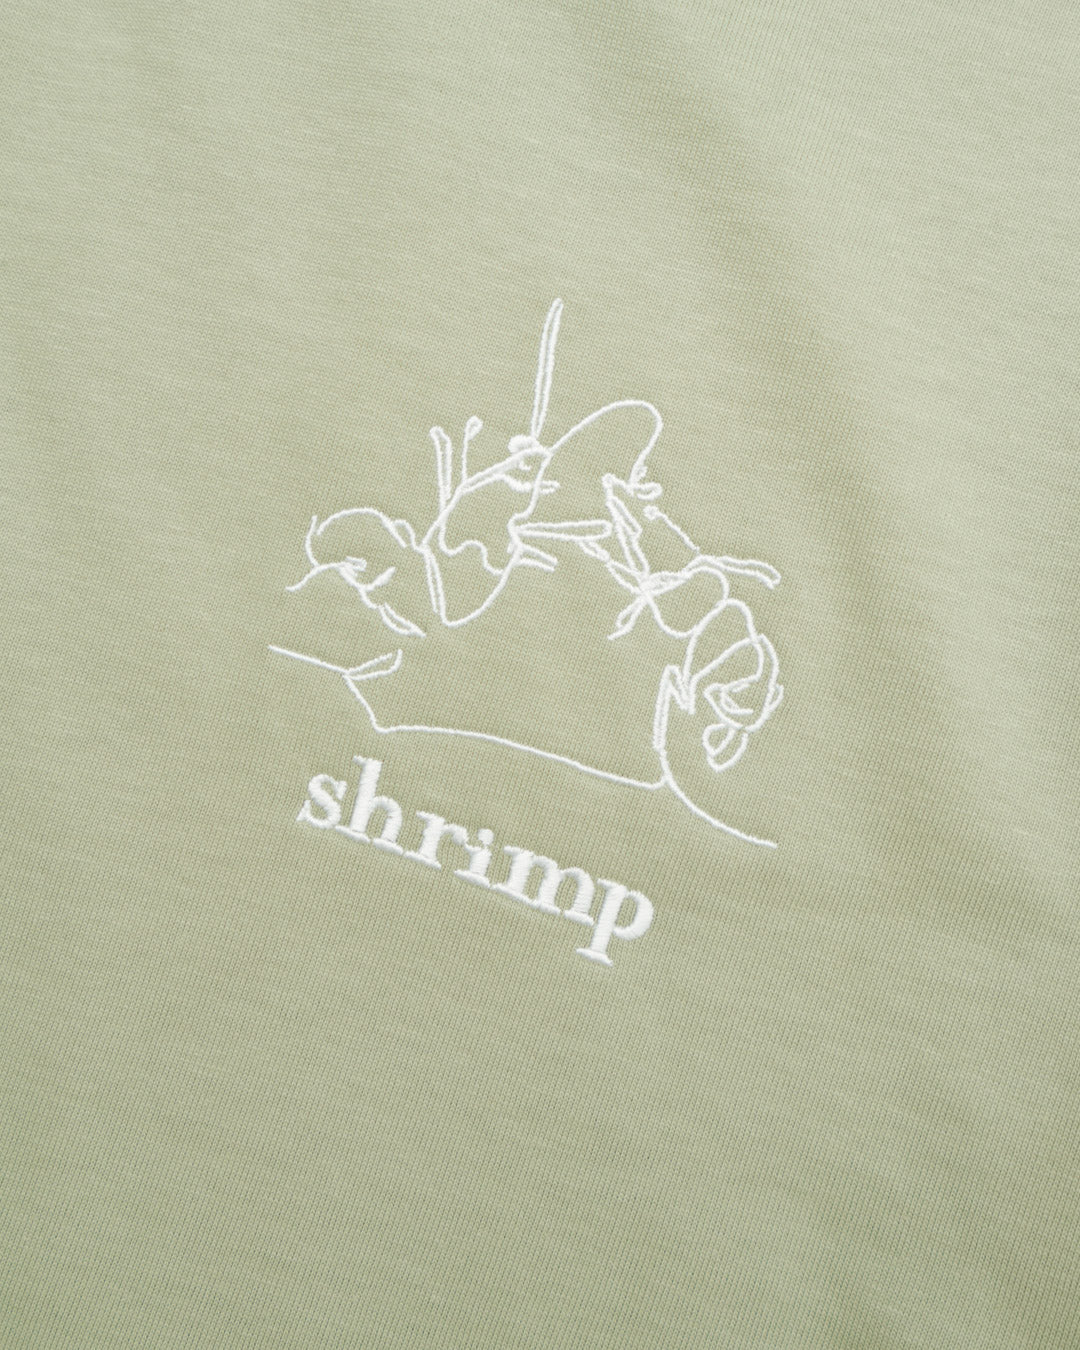 Team Shrimp Heavyweight Tee